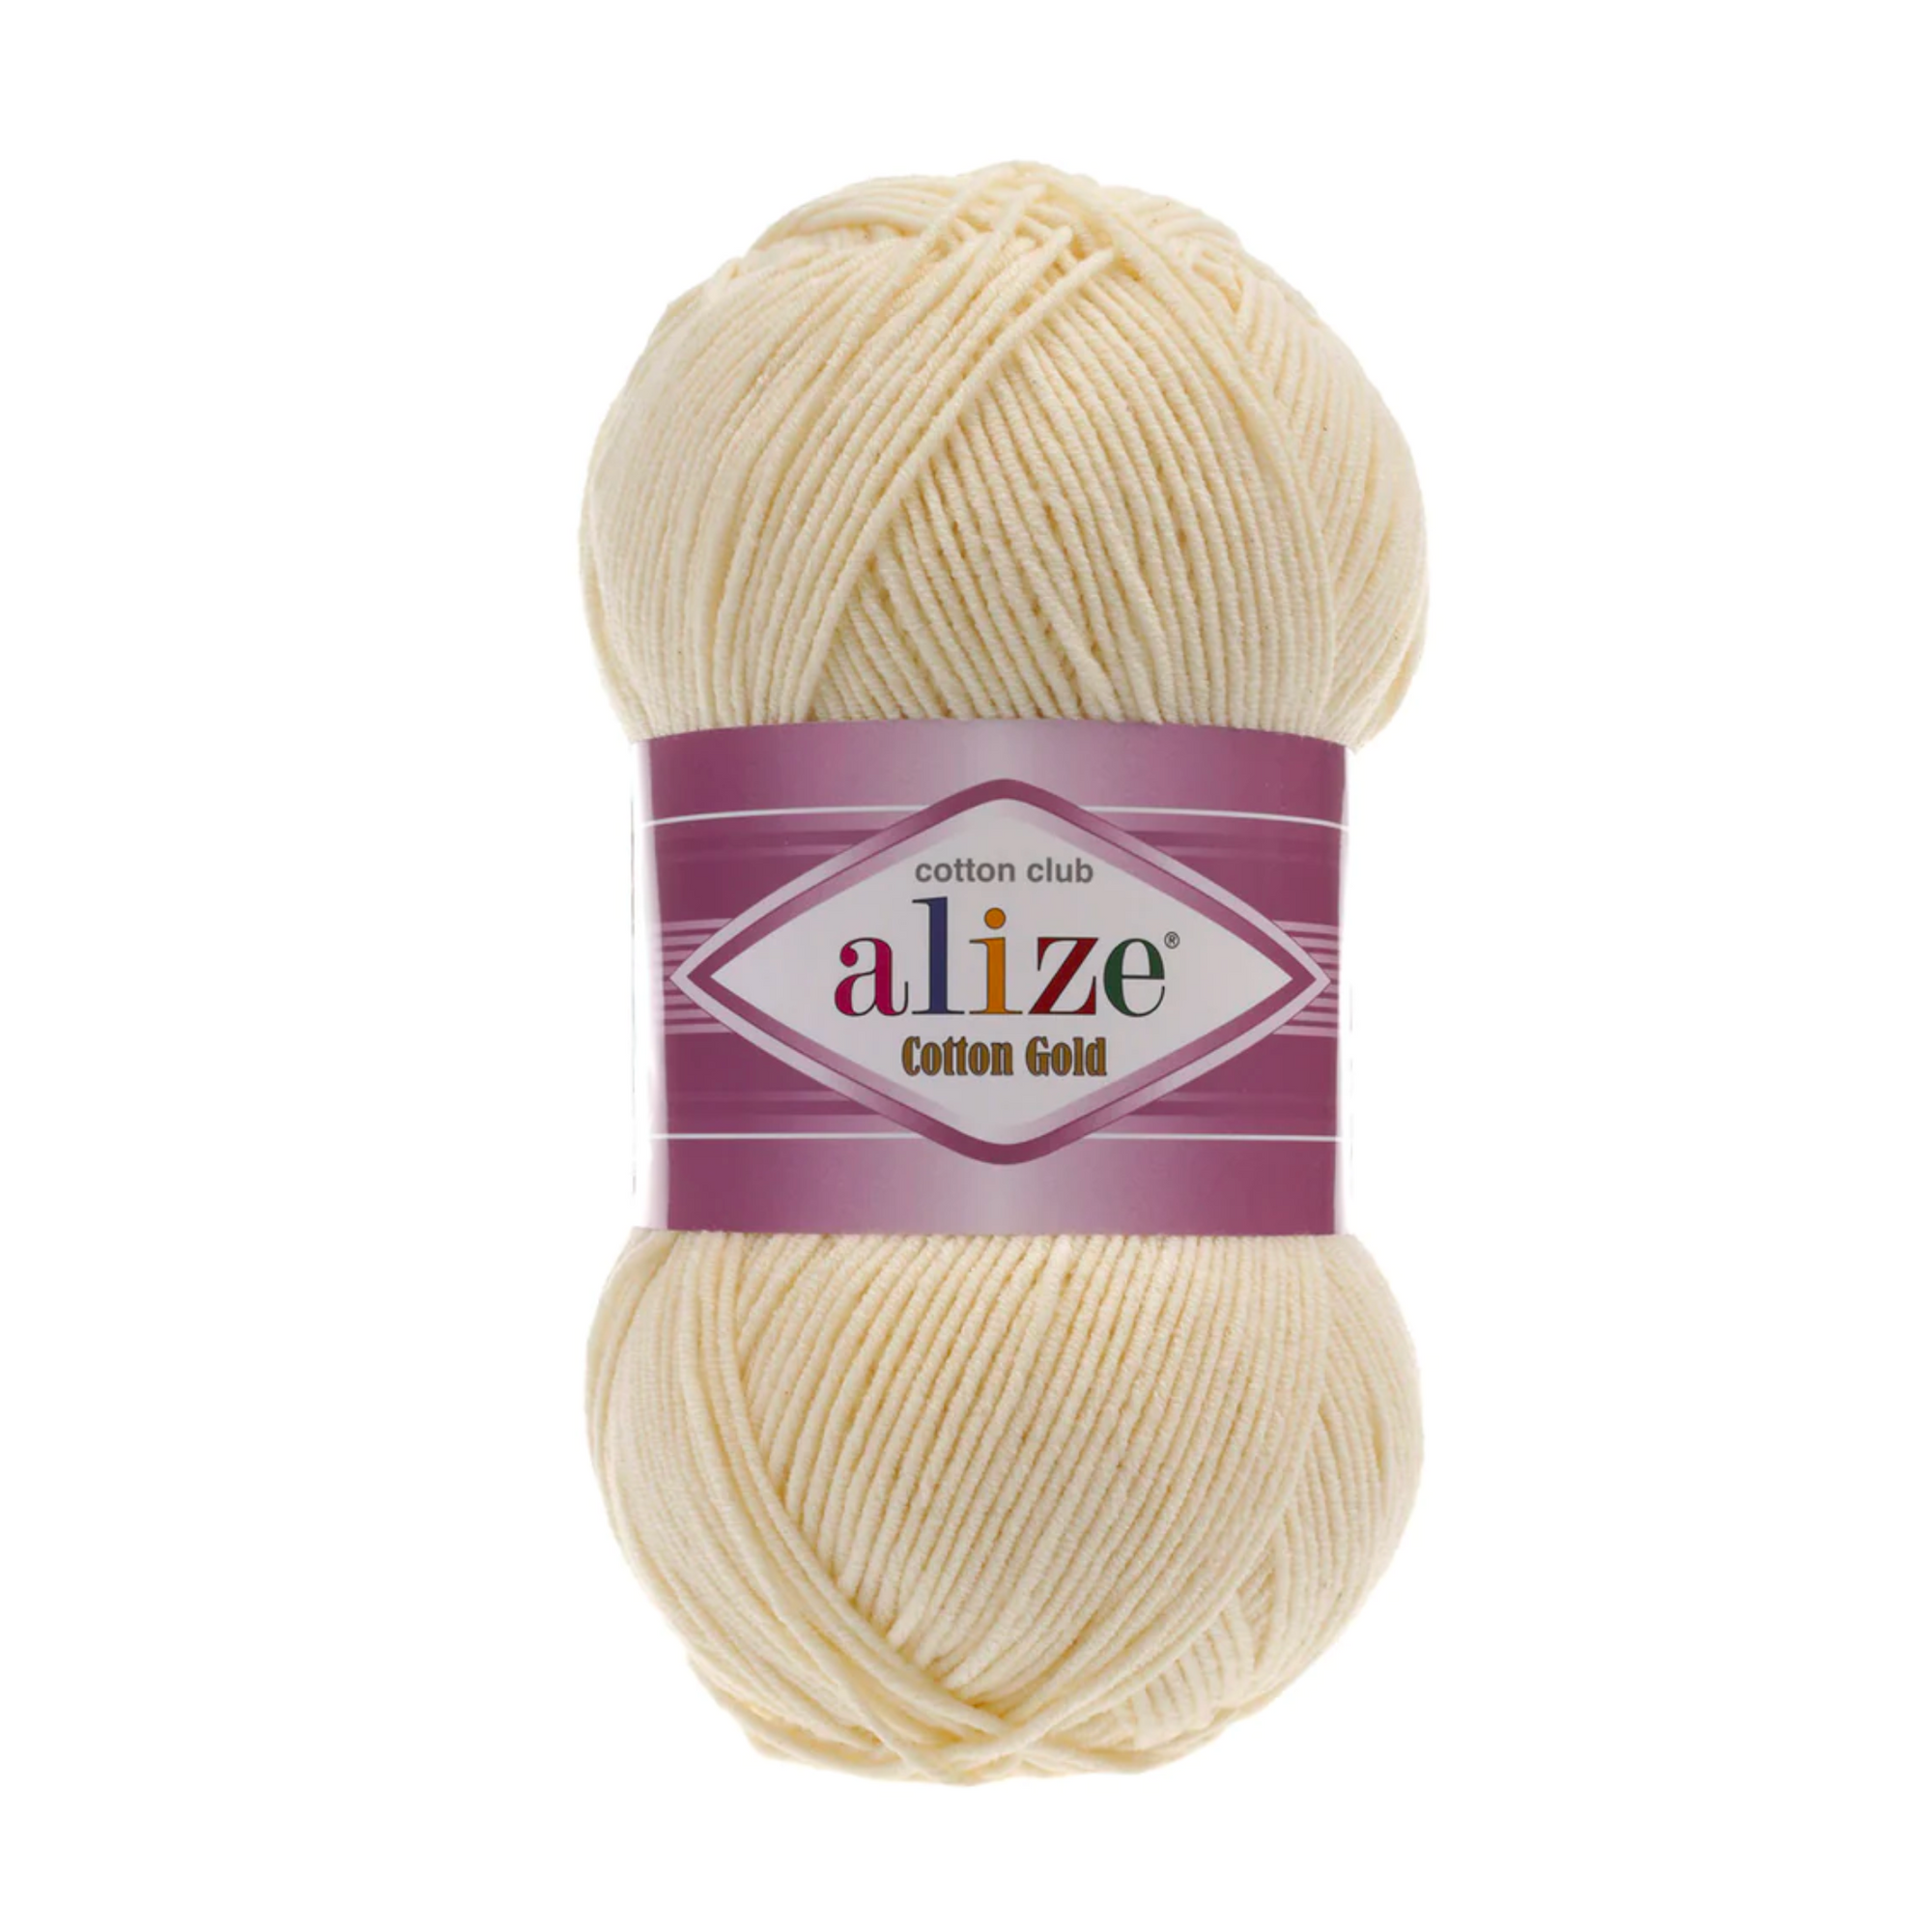 Alize Cotton Gold Knitting Yarn, Mustard Yellow - 02